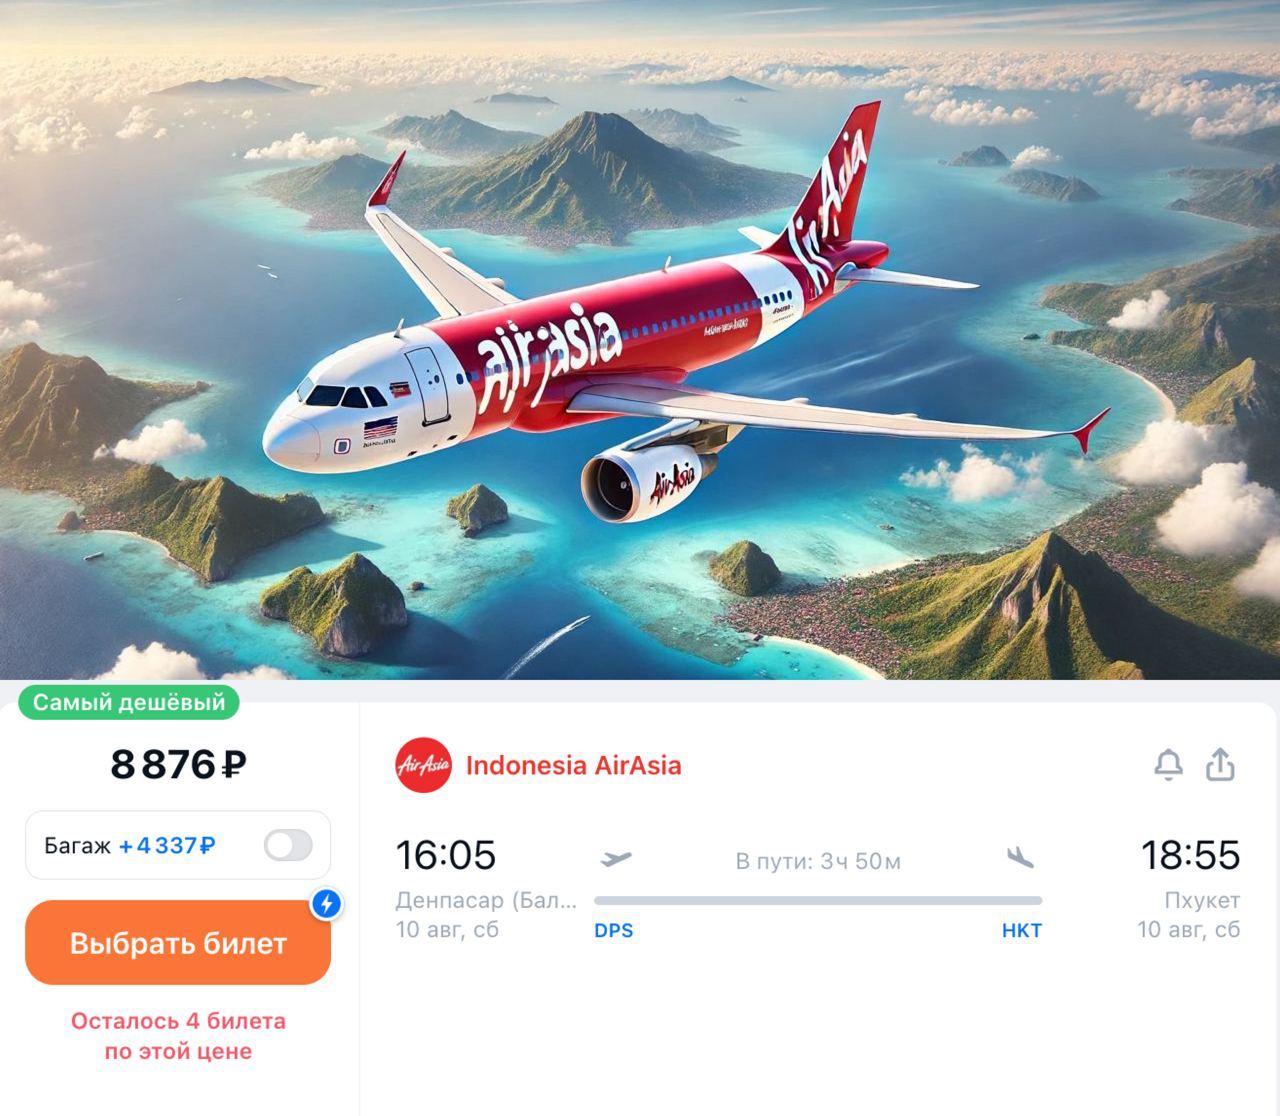 Indonesia AirAsia с 10 августа запускает прямые рейсы между Бали и Пхукетом.  Летать будут три раза в неделю: по вторникам, четвергам и субботам. В дальнейшем, с января по март 2025 года, планируется увеличить частоту рейсов до ежедневной​. Билеты в одну сторону стоят от 8 800₽. Время в пути составляет около 4 часов.